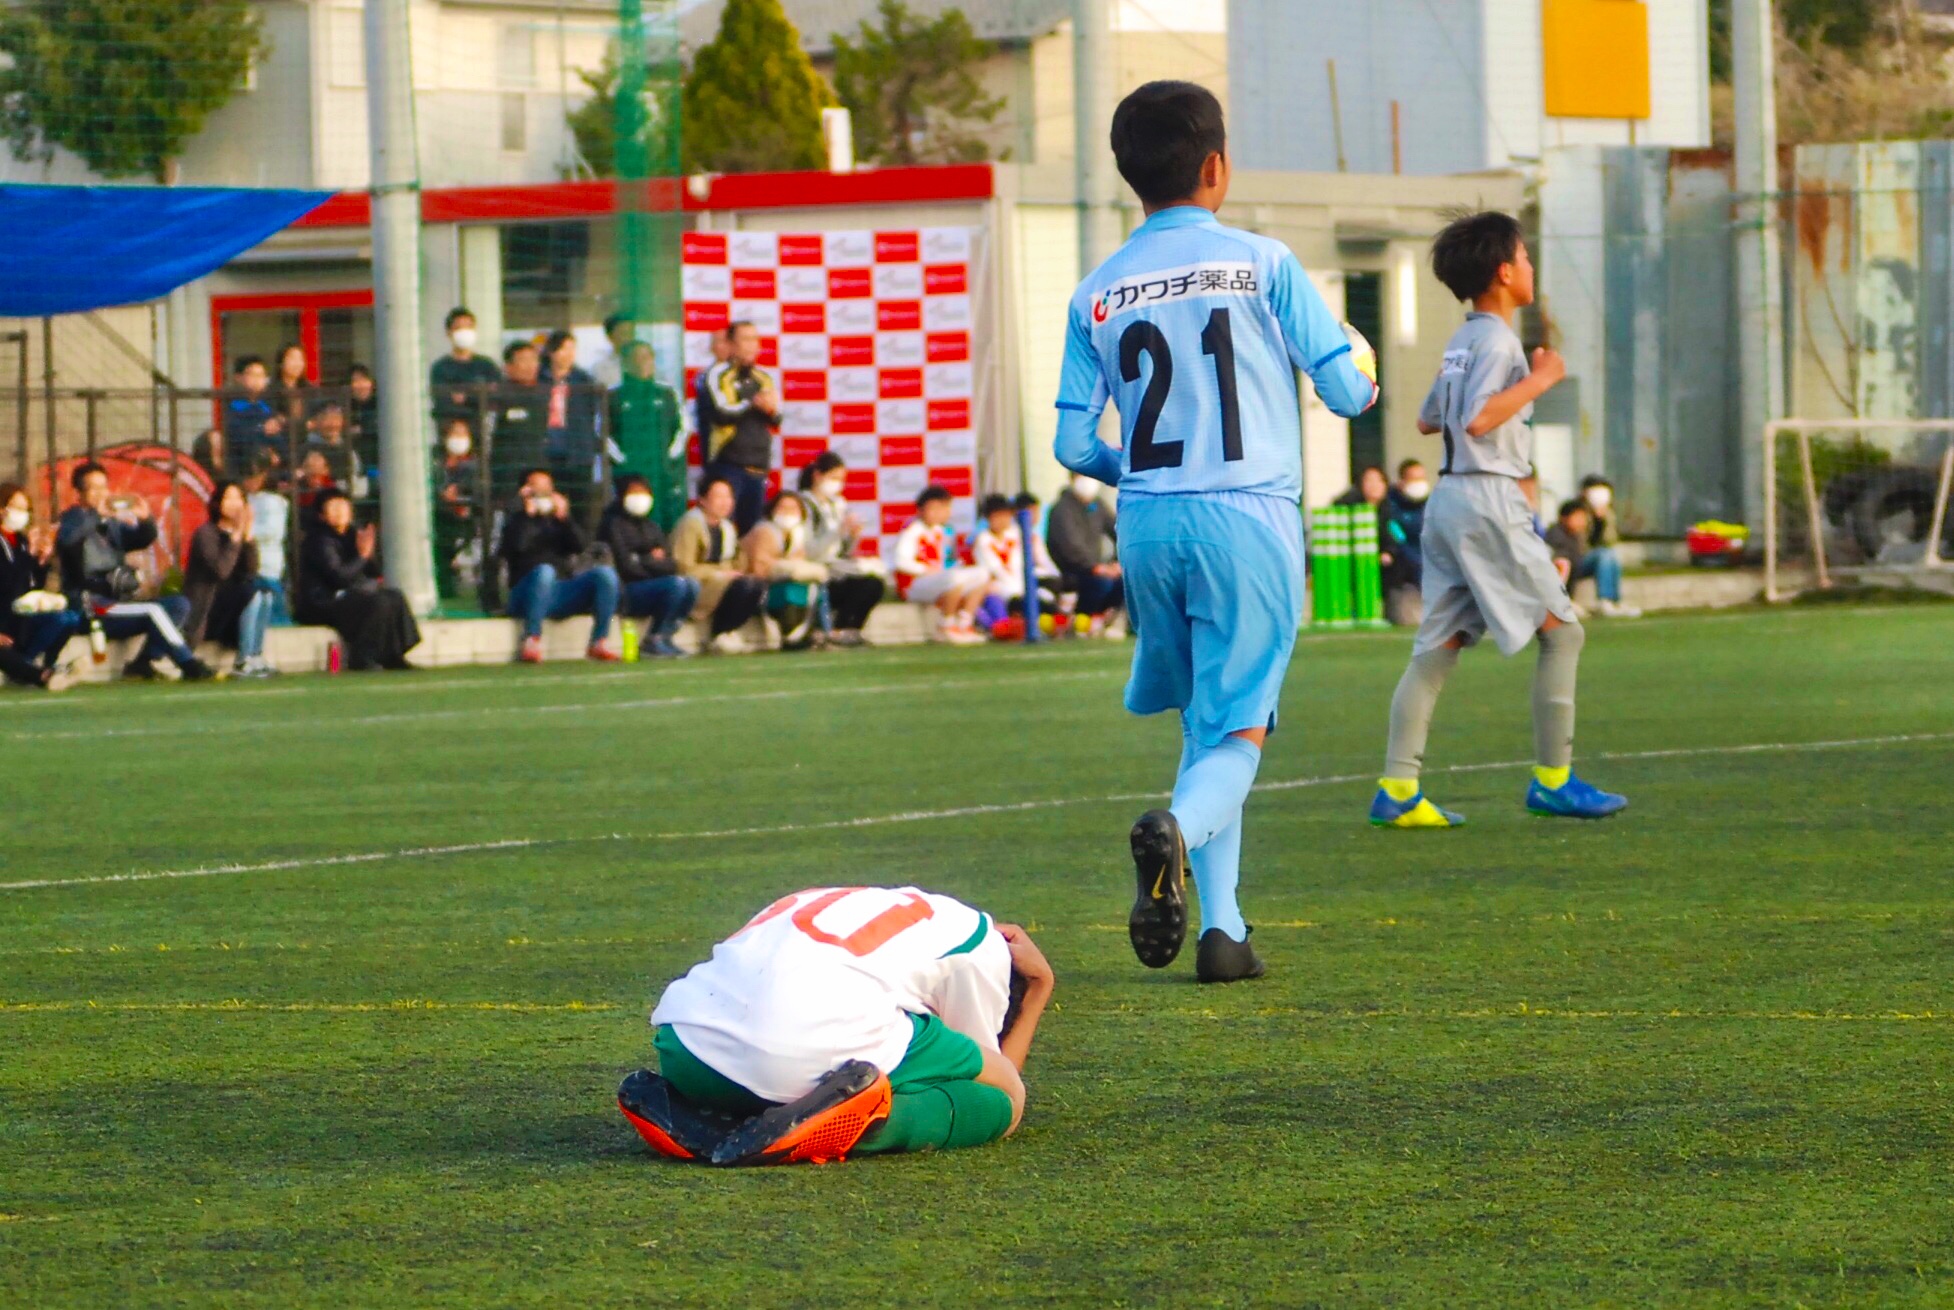 アイリスオーヤマ スポーツ施設事業の基盤を拡大 小学5年生のサッカーリーグ プレミアリーグu 11 スポンサー契約を締結 サッカーキング